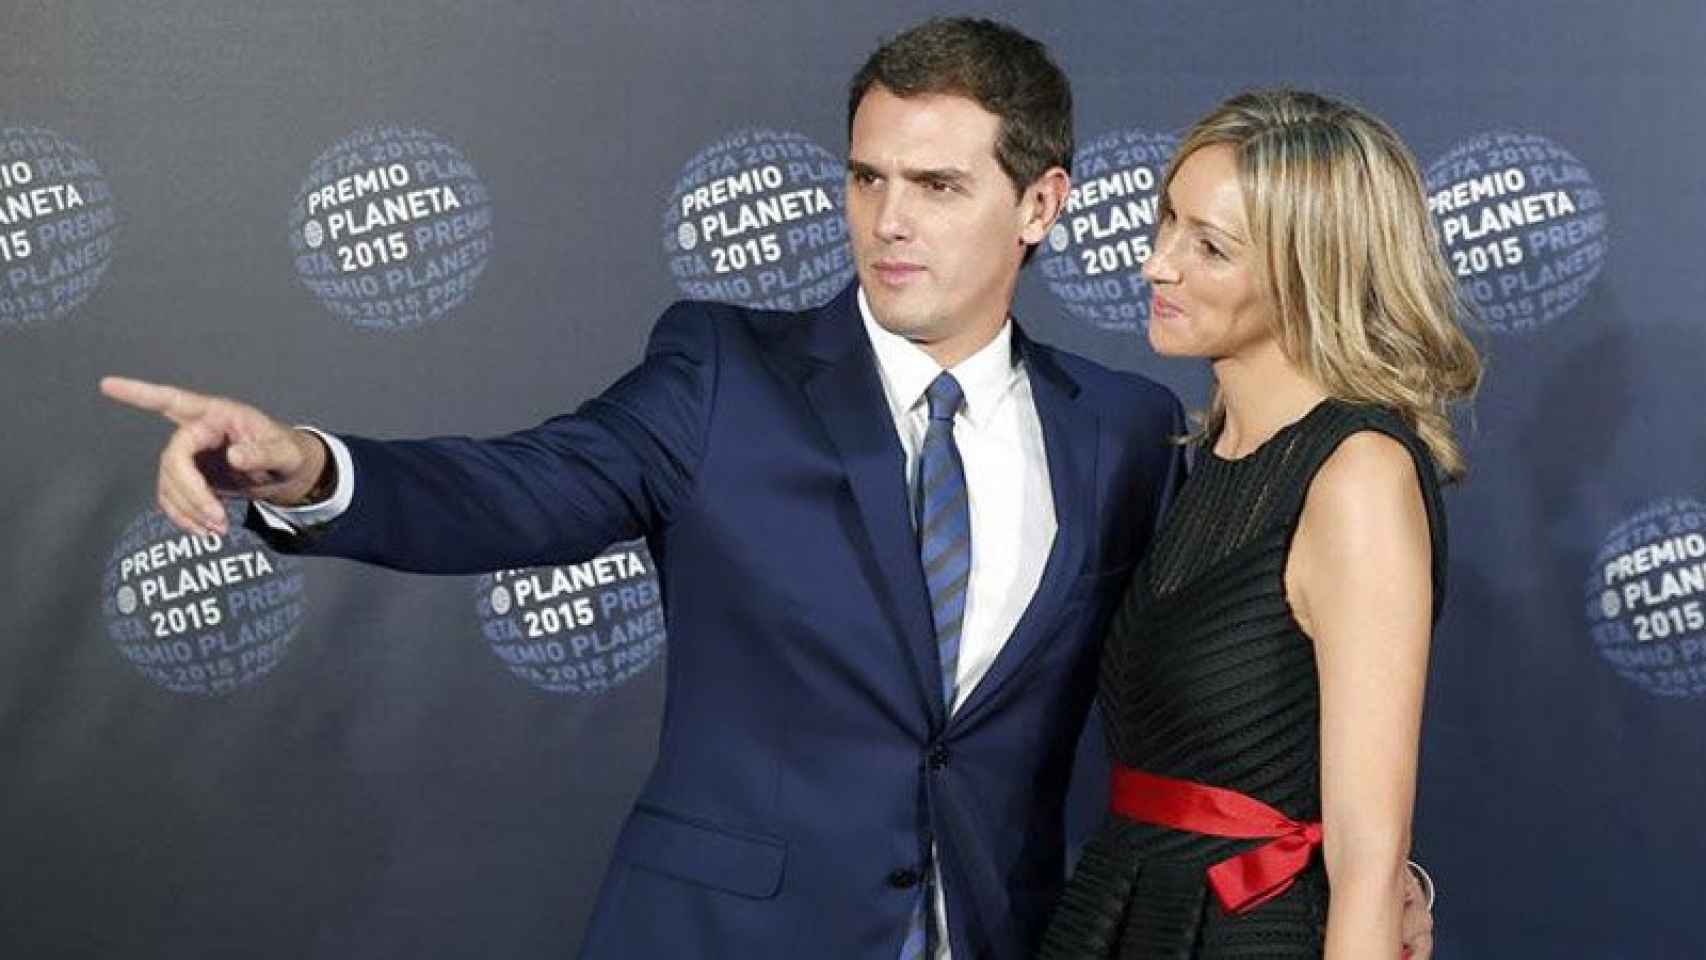 El líder de Ciudadanos, Albert Rivera, presentó a su pareja en la entrega de los Premios Planeta